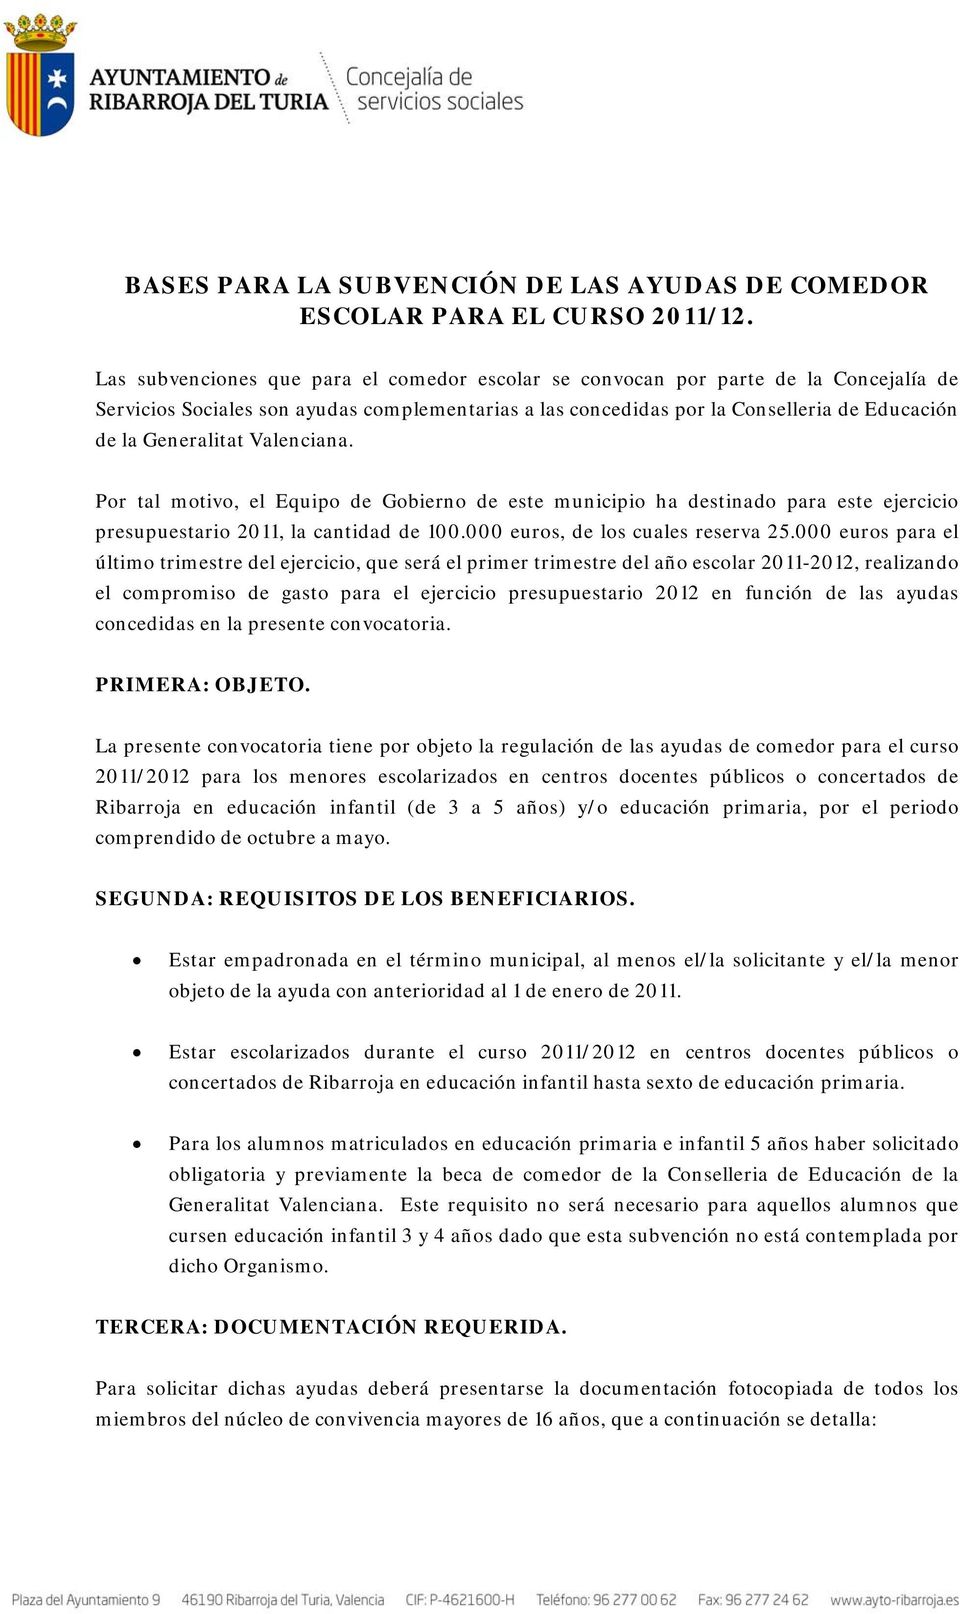 Valenciana. Por tal motivo, el Equipo de Gobierno de este municipio ha destinado para este ejercicio presupuestario 2011, la cantidad de 100.000 euros, de los cuales reserva 25.